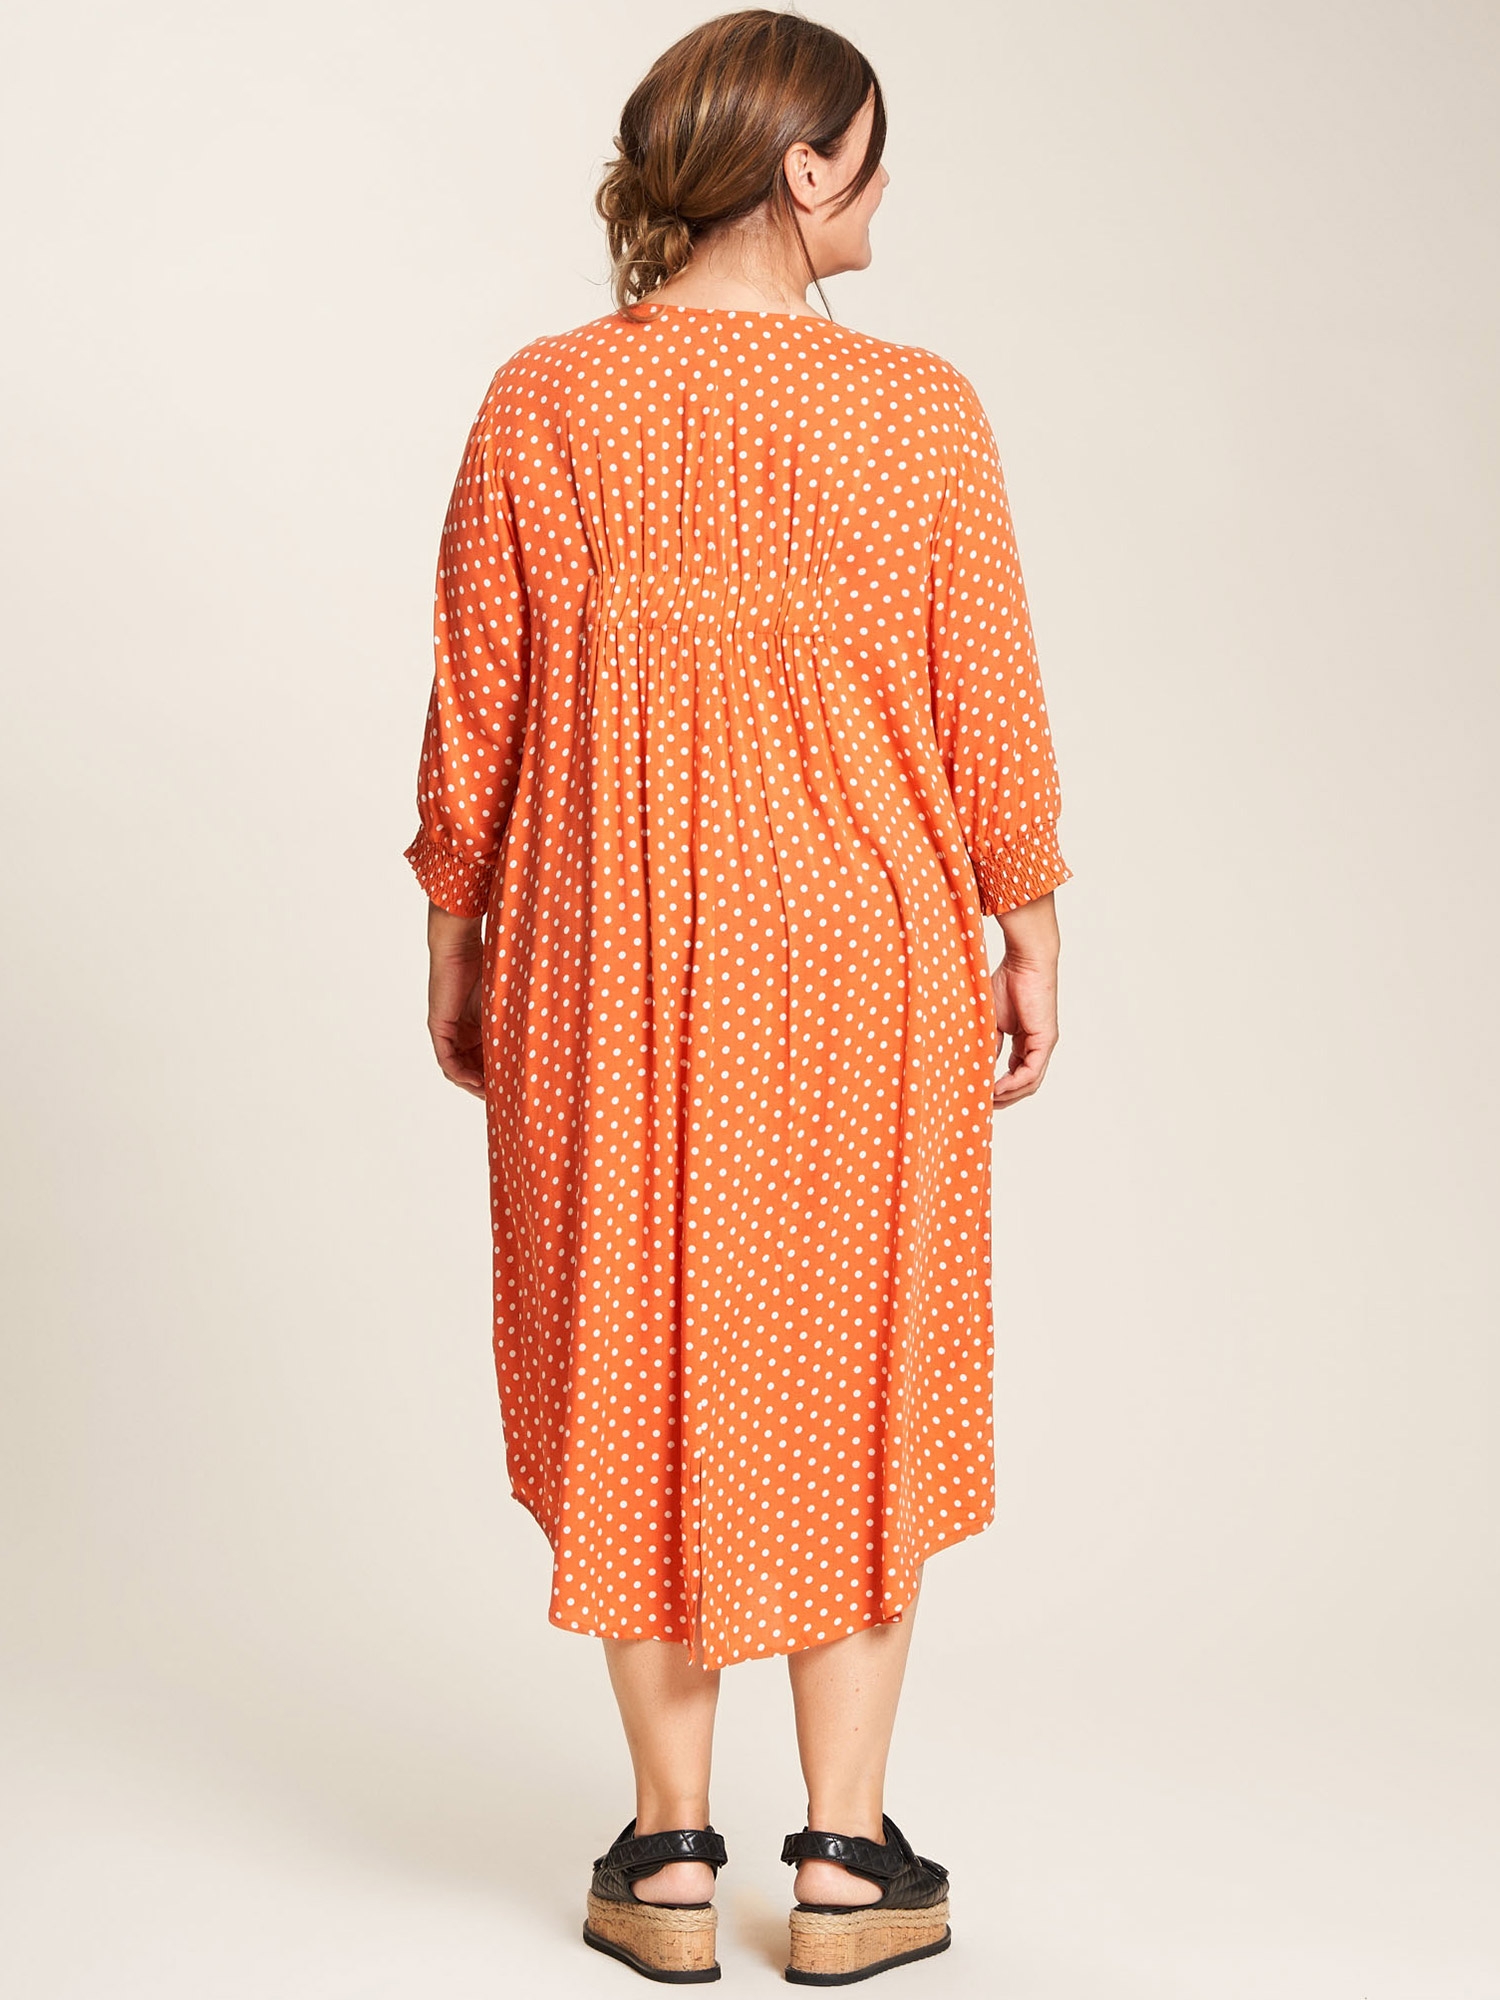 Alice - oransje viskose kjole med fine små prikker fra Gozzip